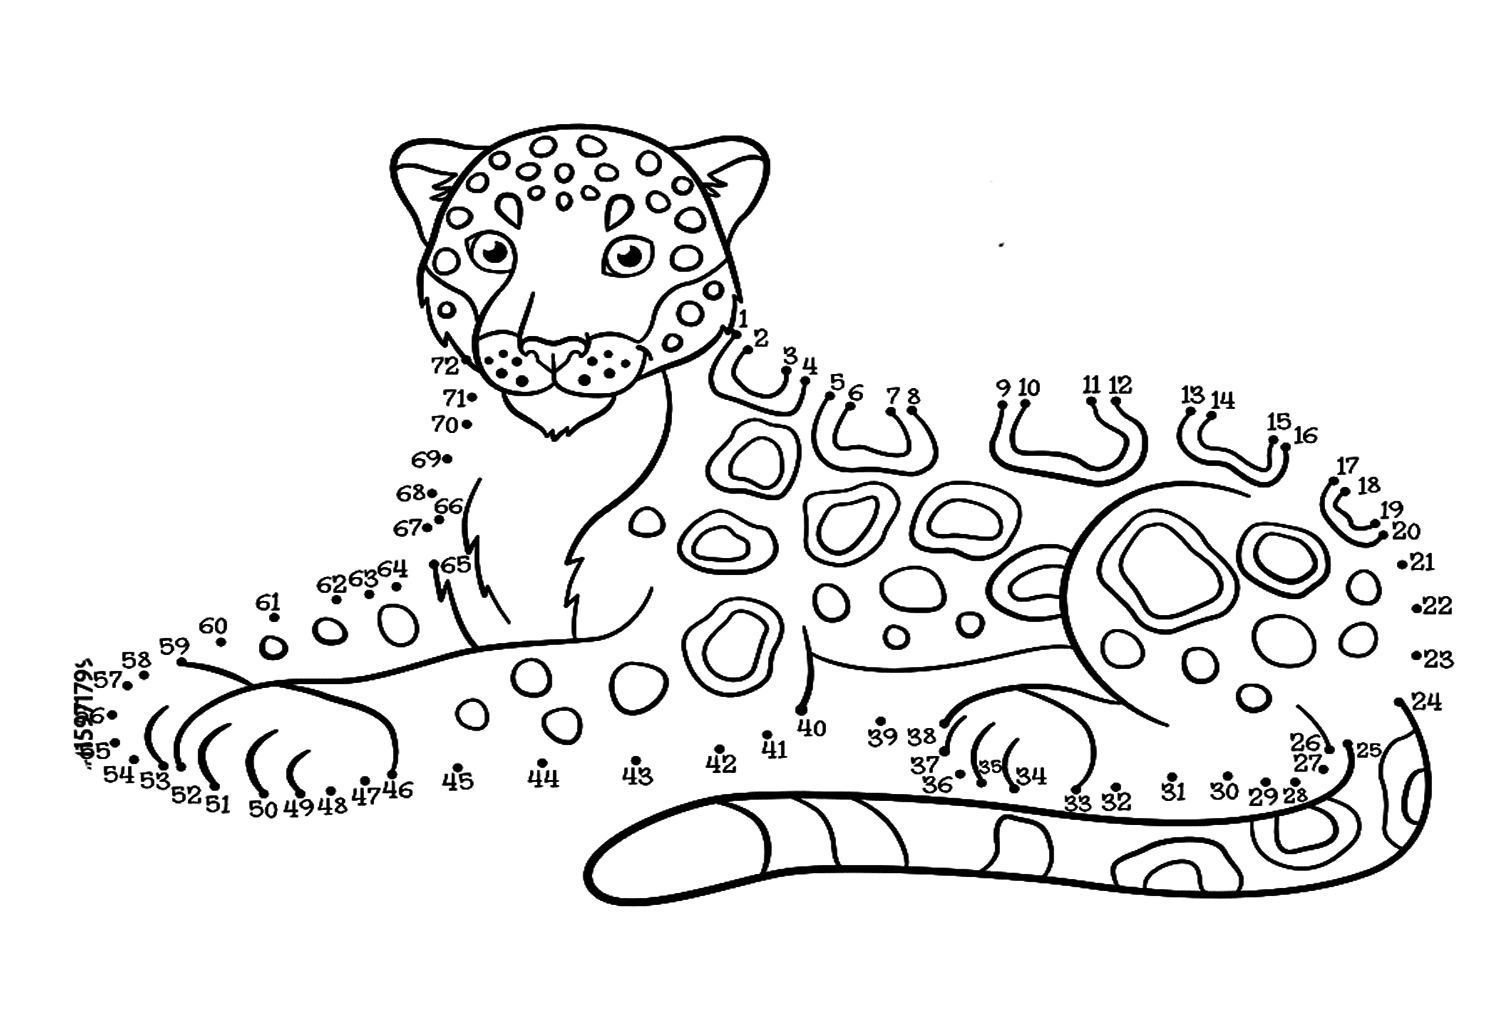 Giaguaro in riposo da Giaguaro